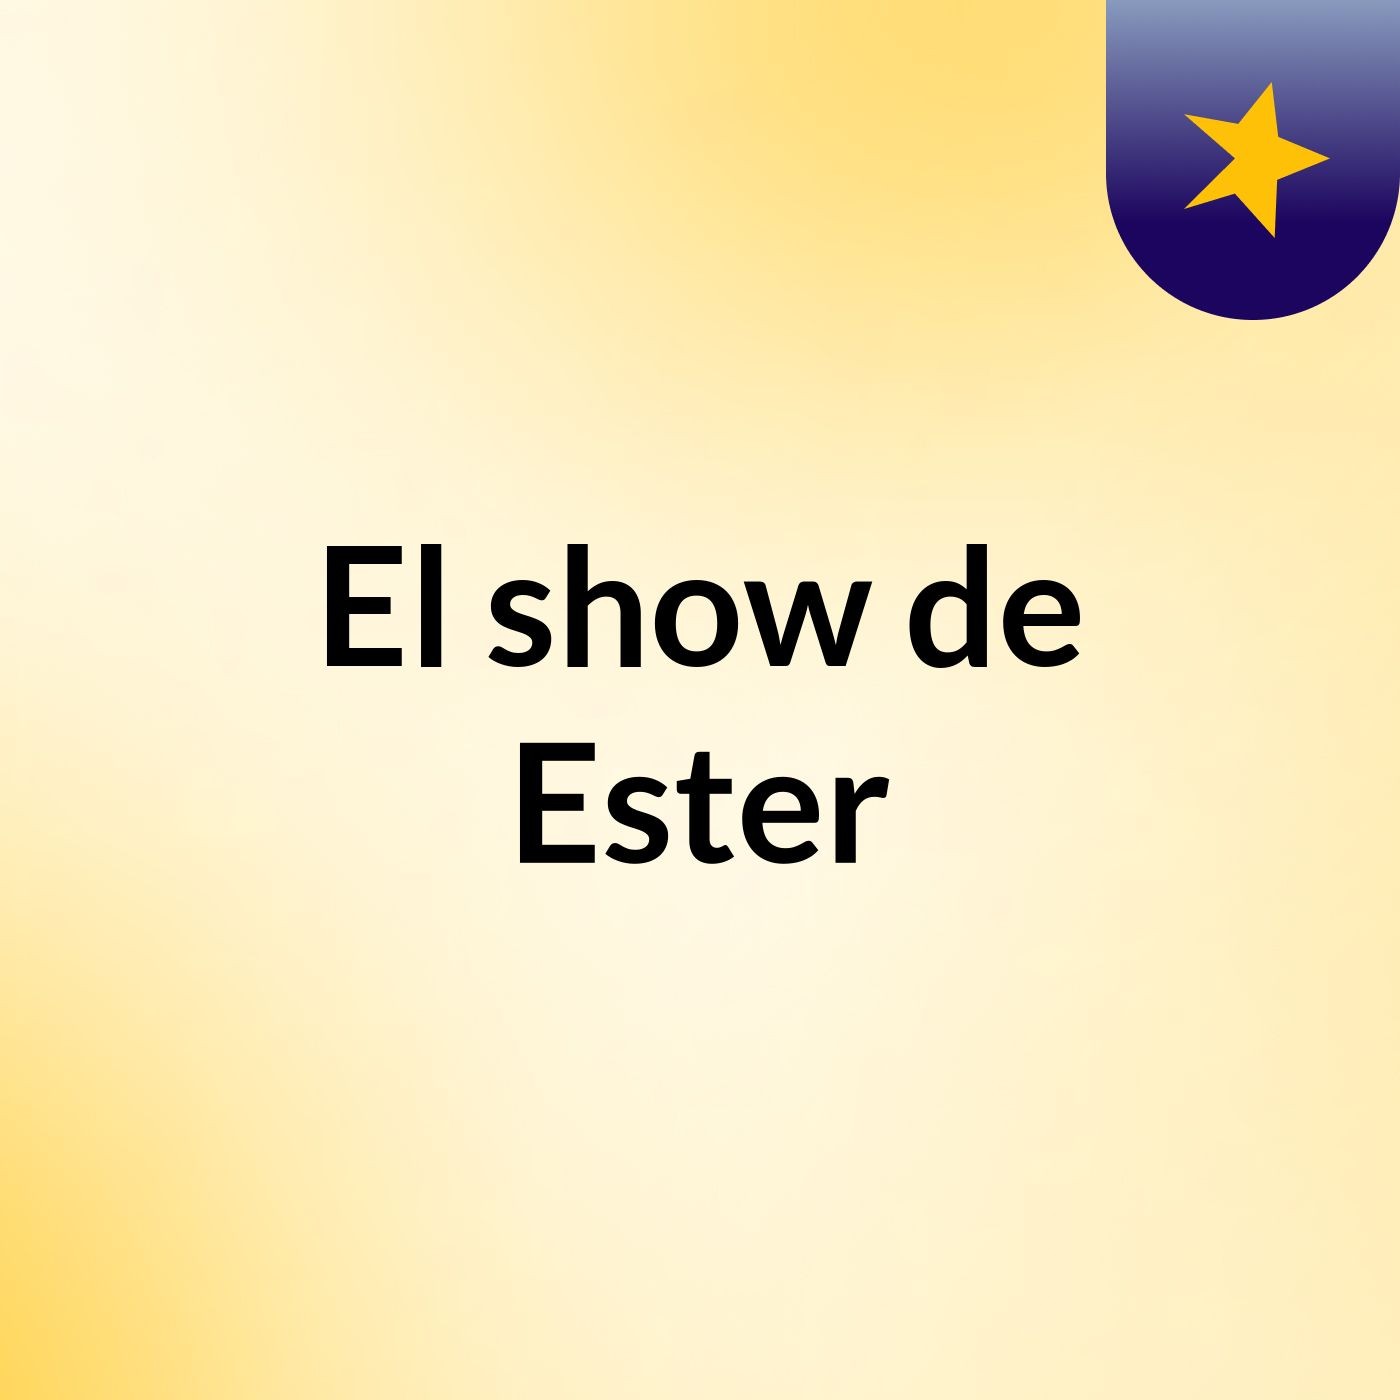 El show de Ester